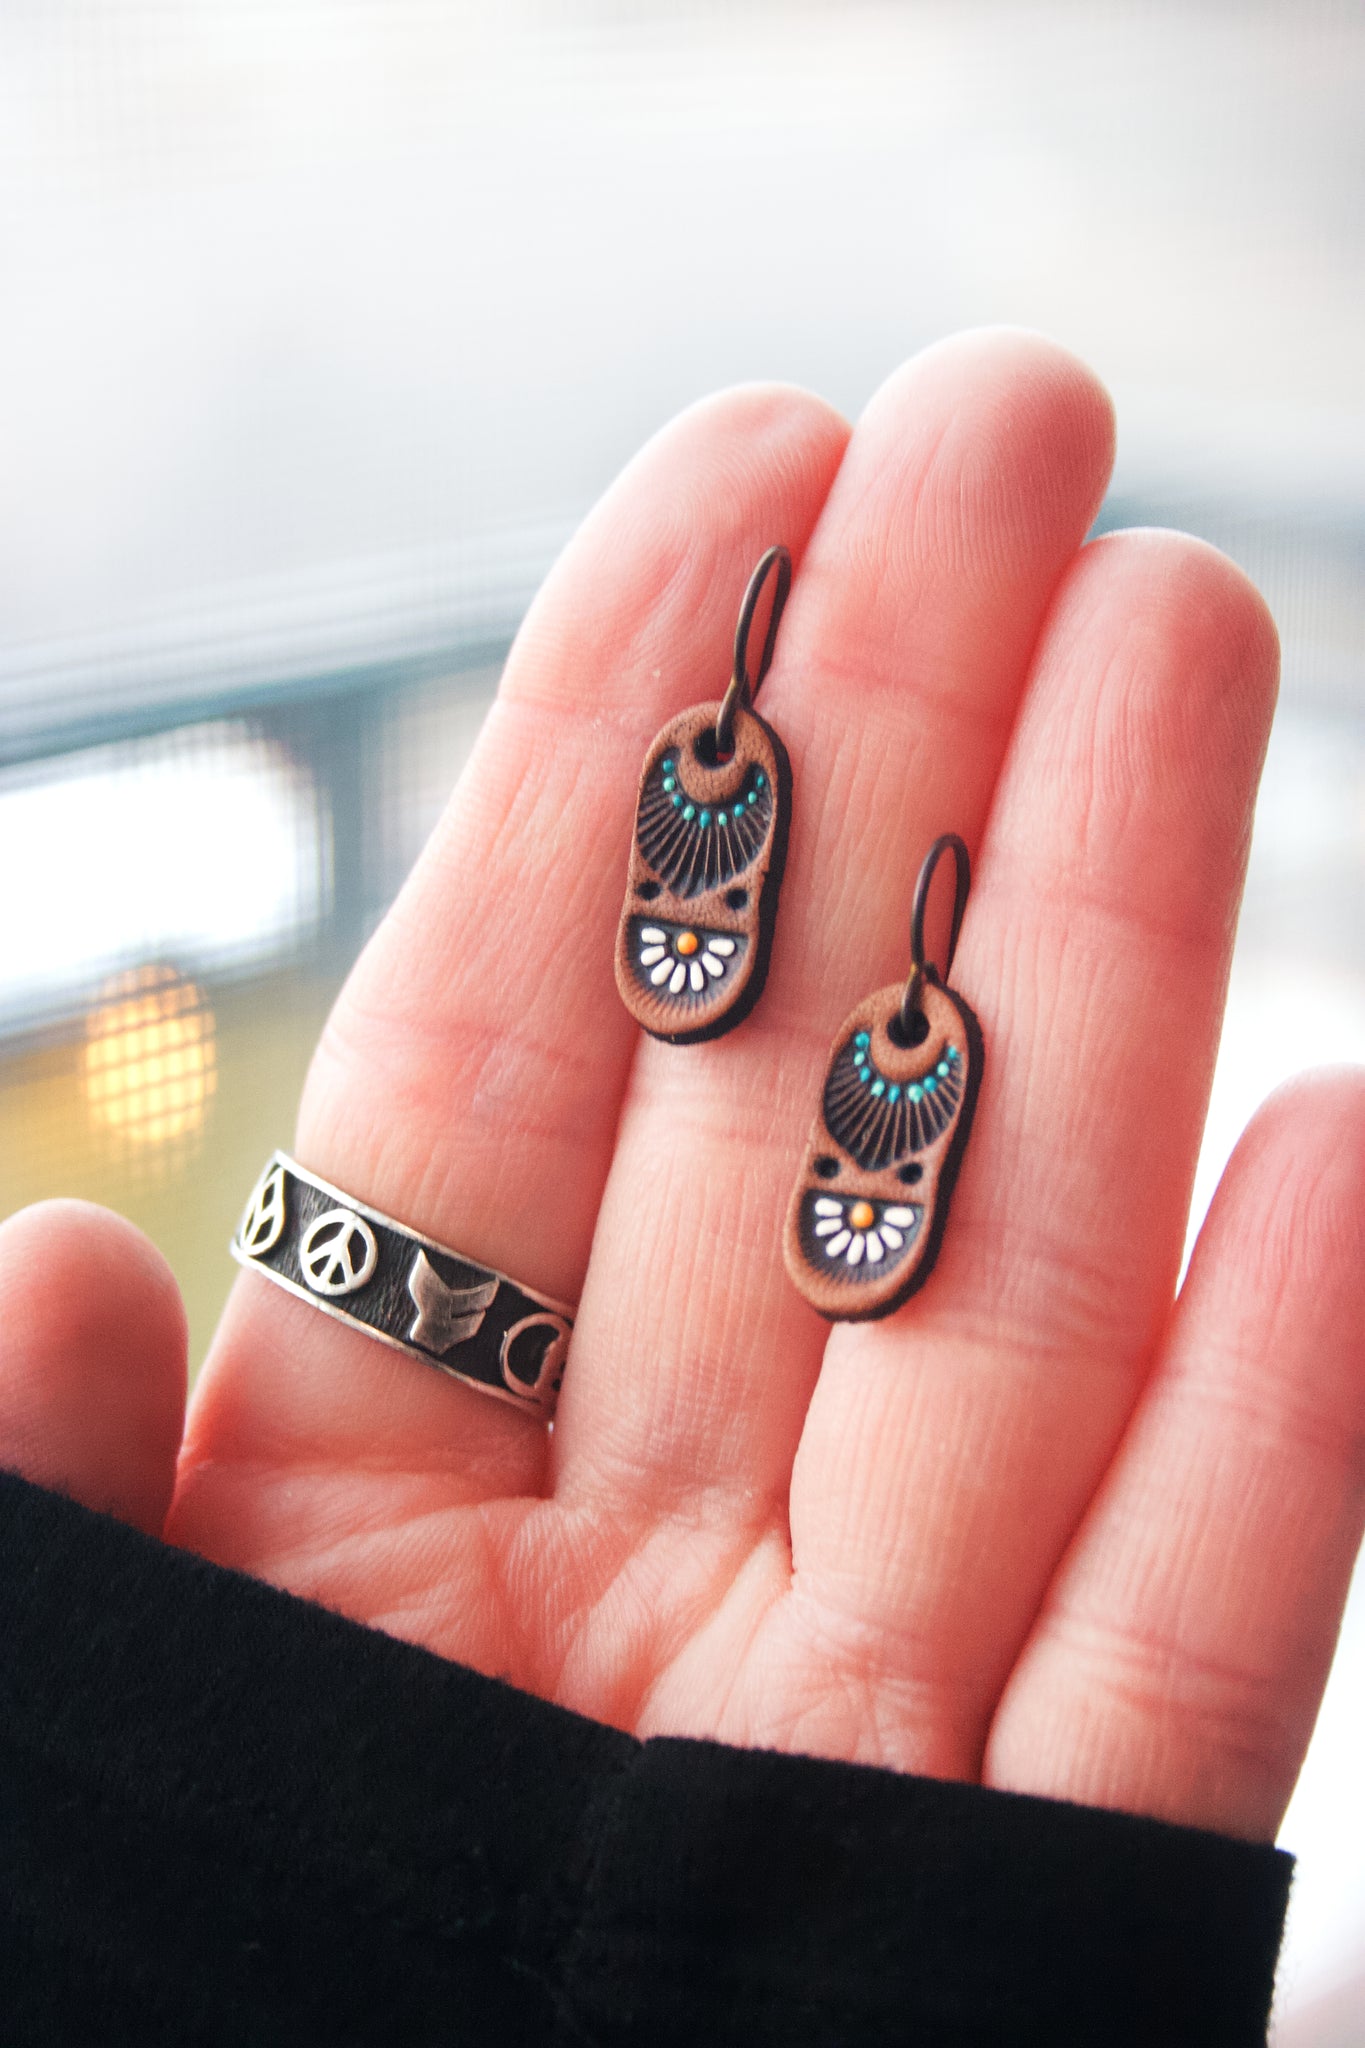 Super Mini Daisy earrings